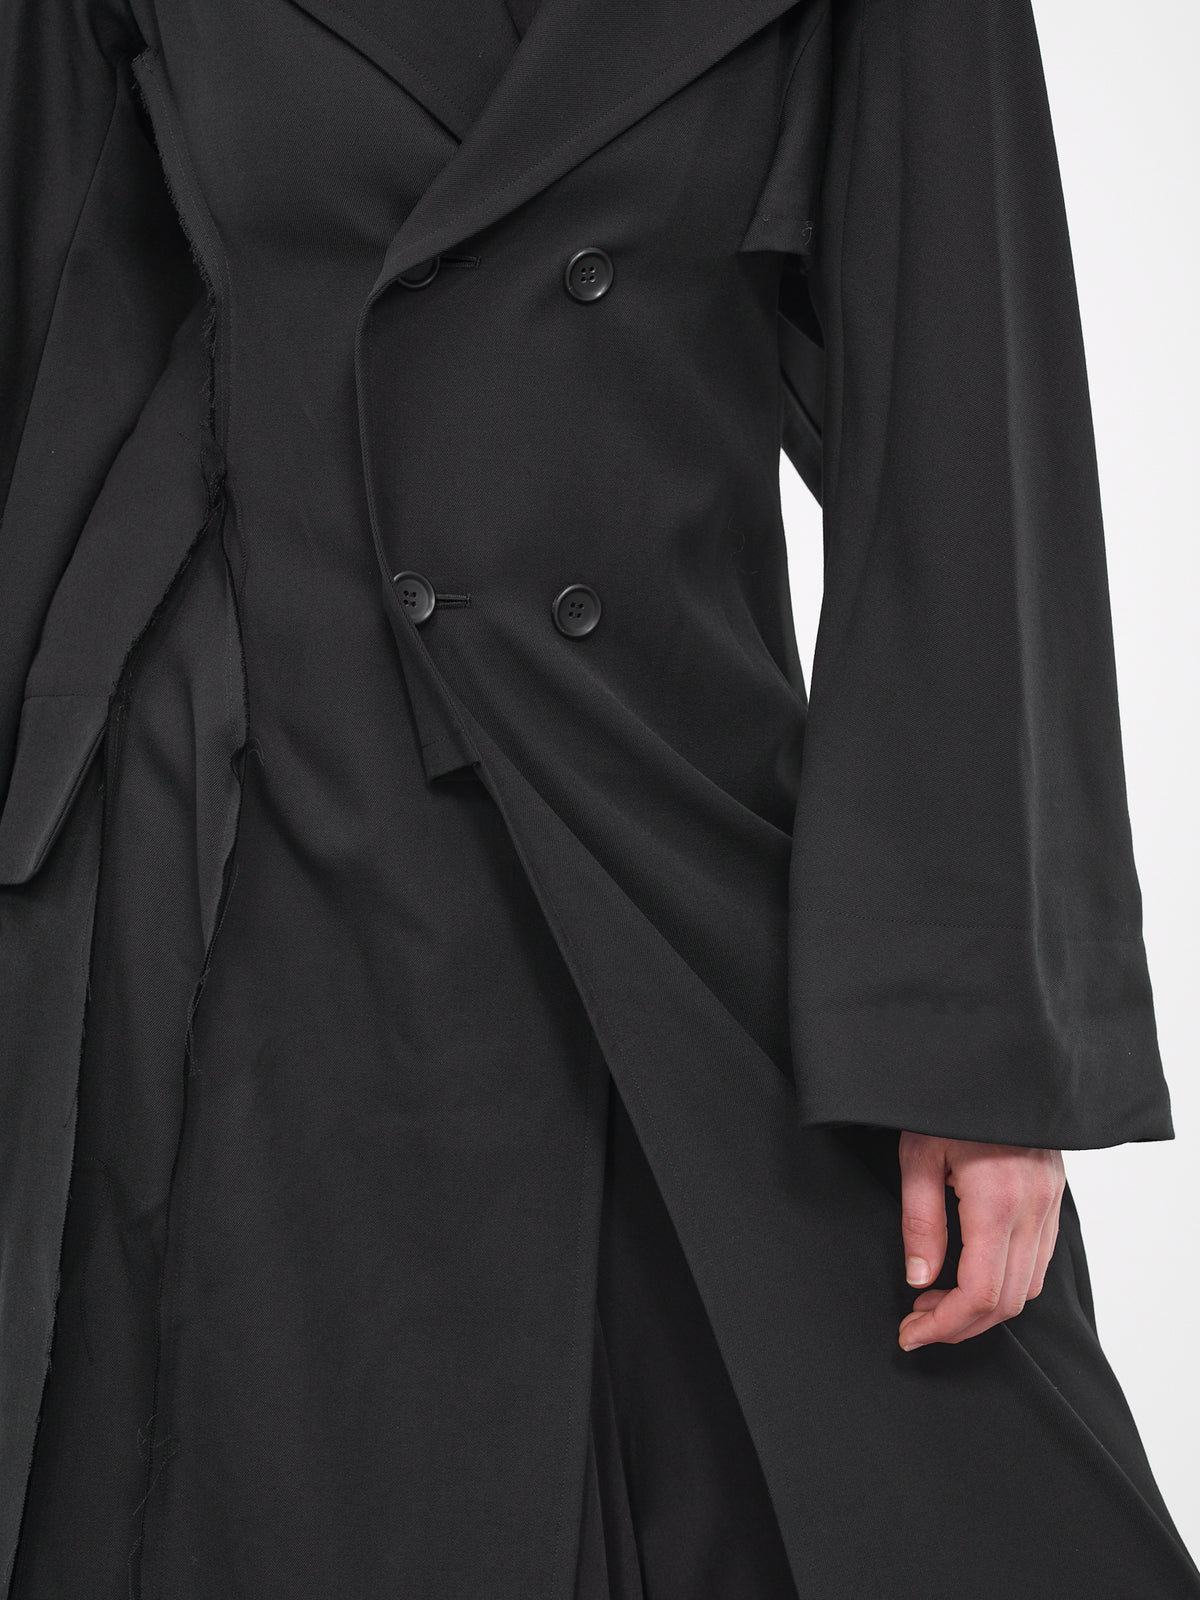 Deconstructed Tailored Coat (FJ-C65-103-1-02-BLACK)